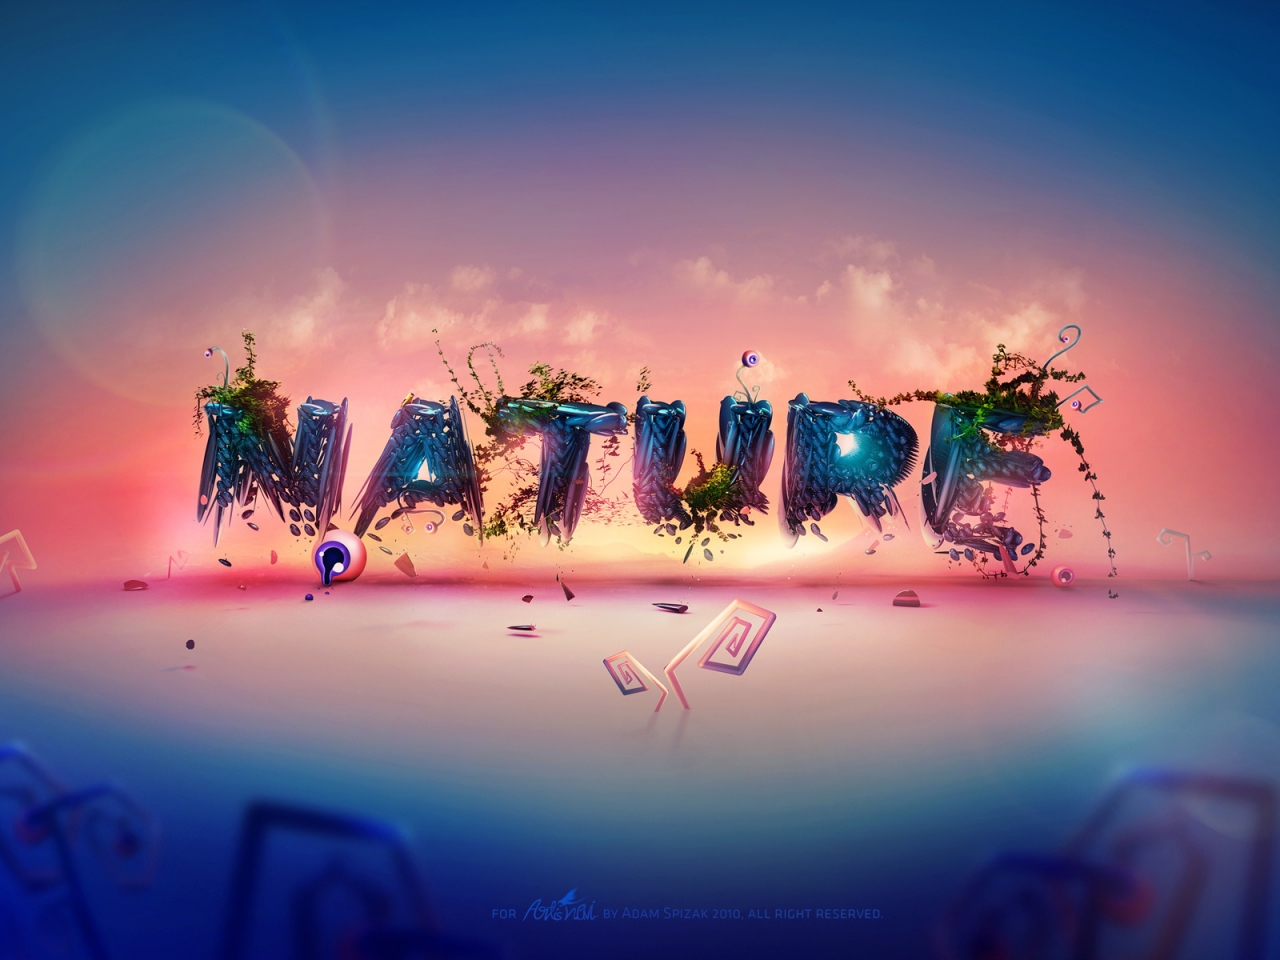 Dali Nature for 1280 x 960 resolution